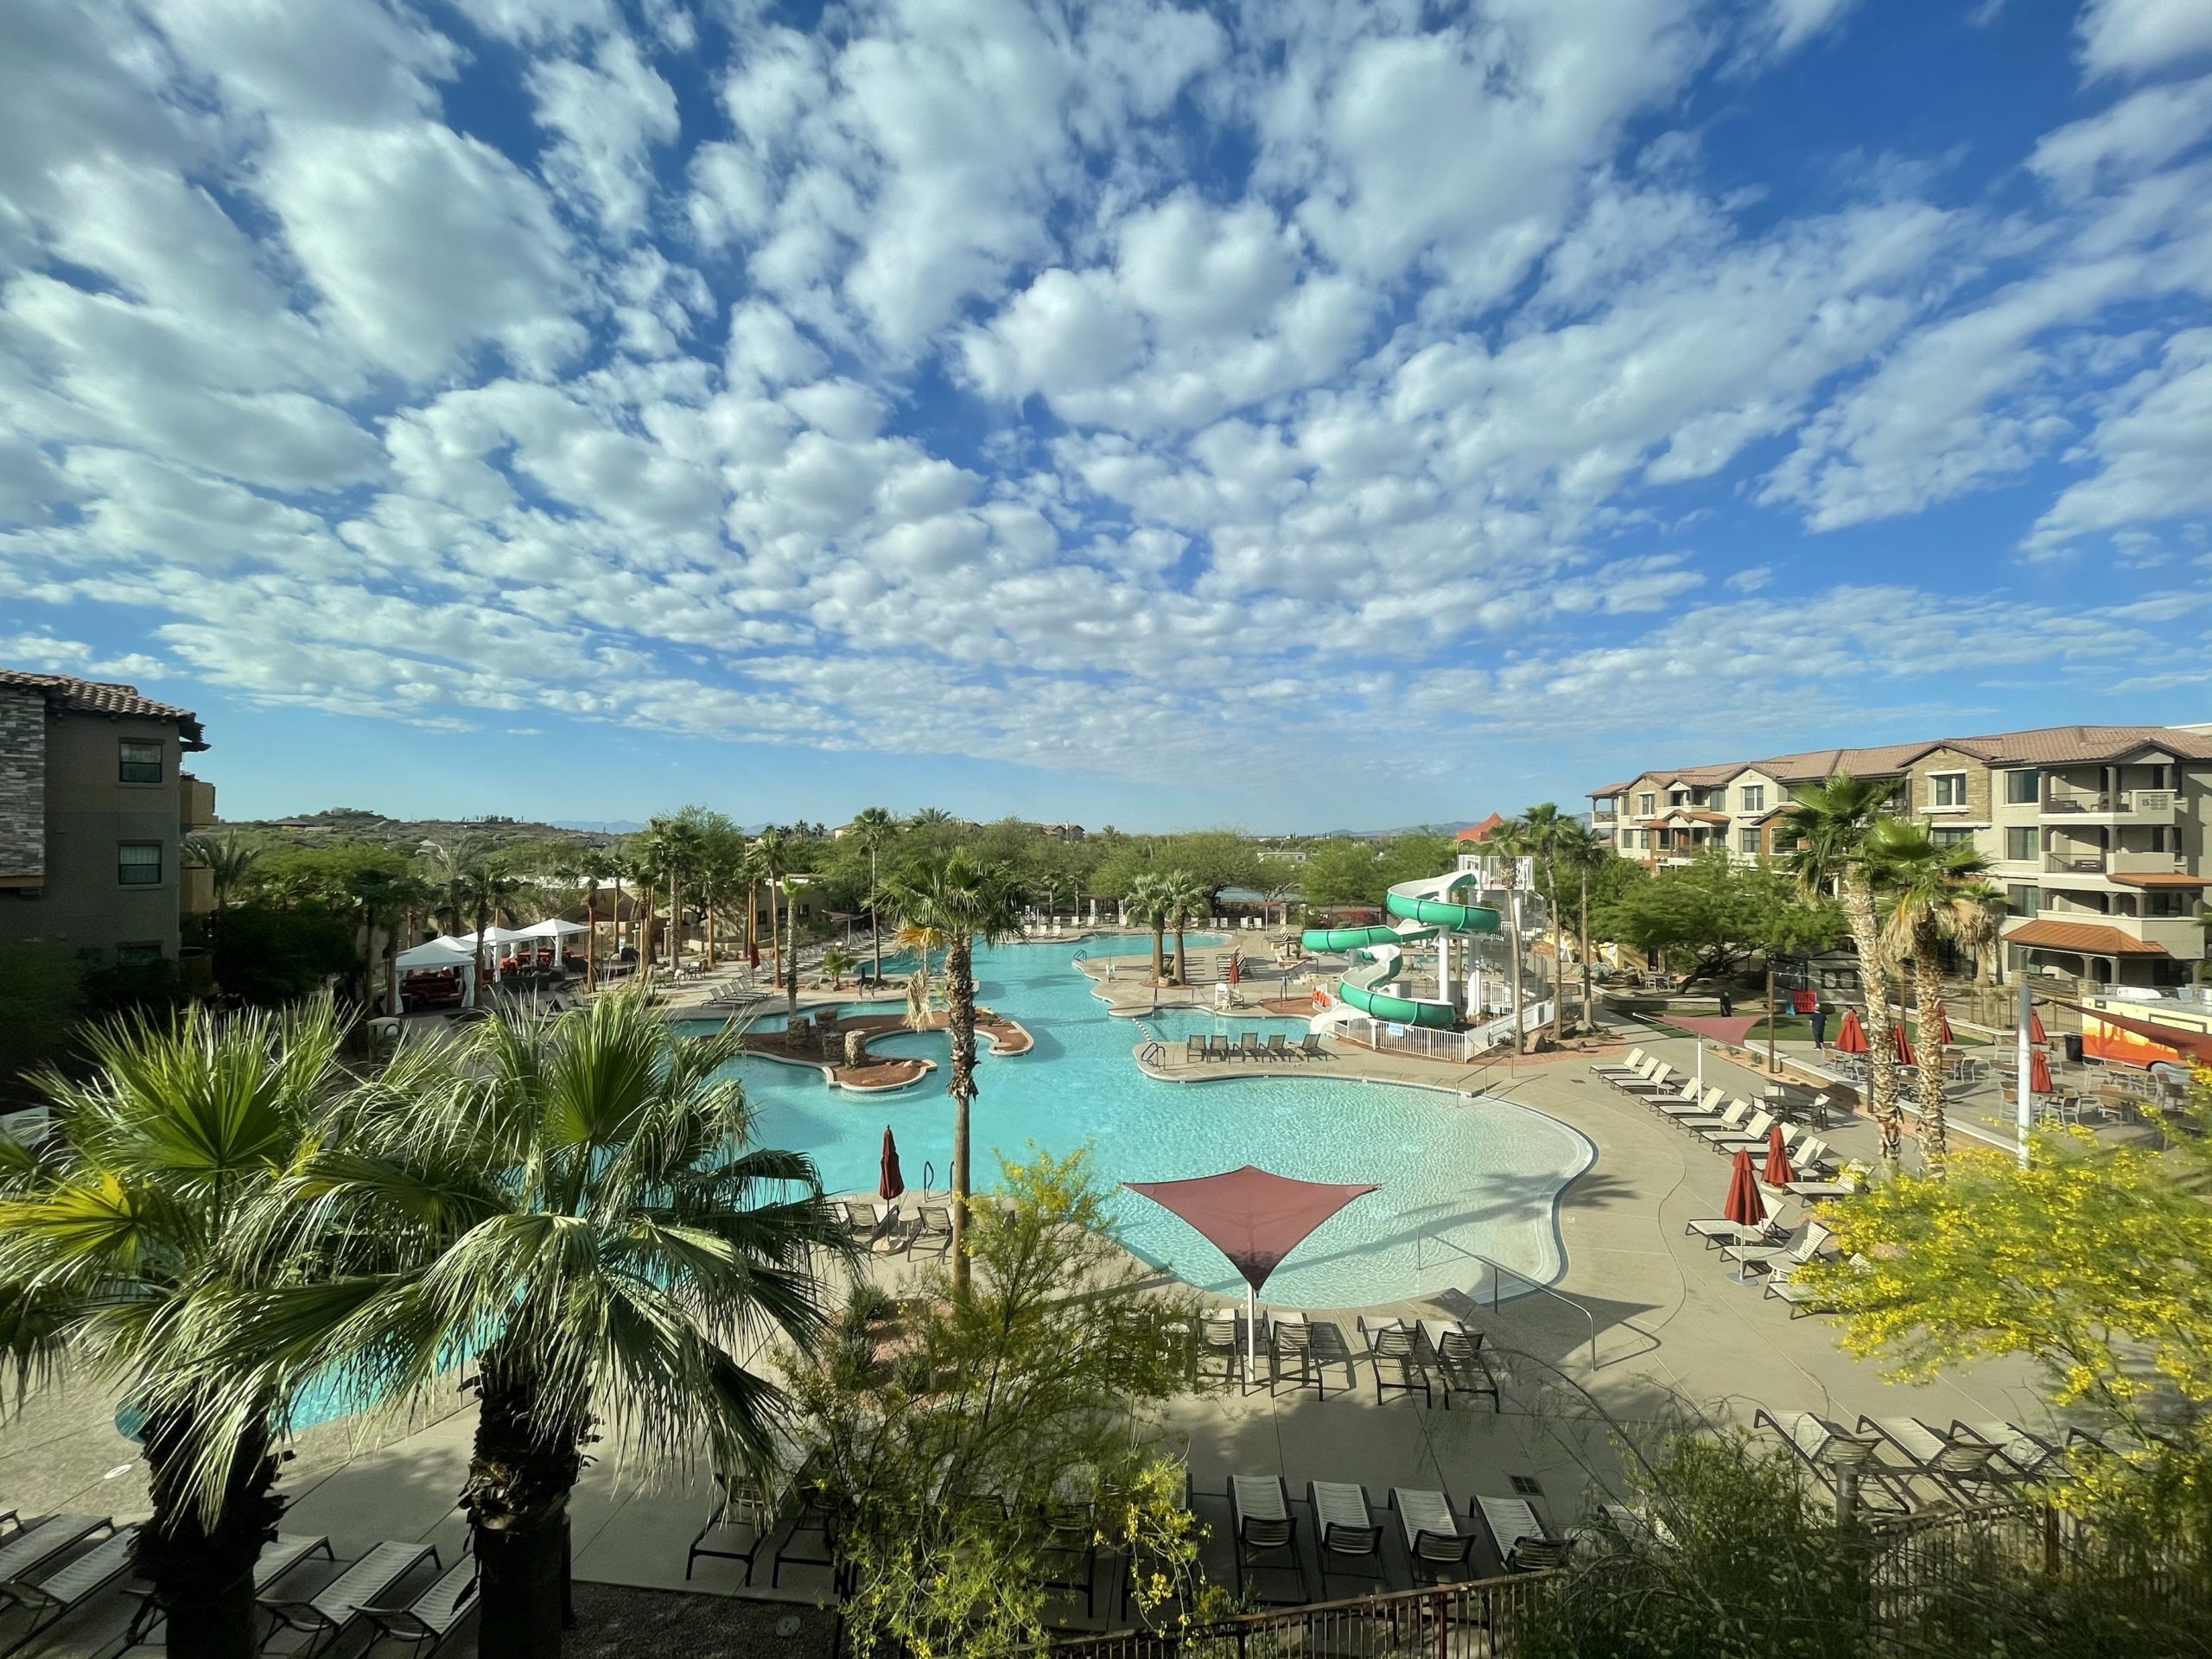 5 Reasons to Stay at Cibola Vista Resort in Arizona